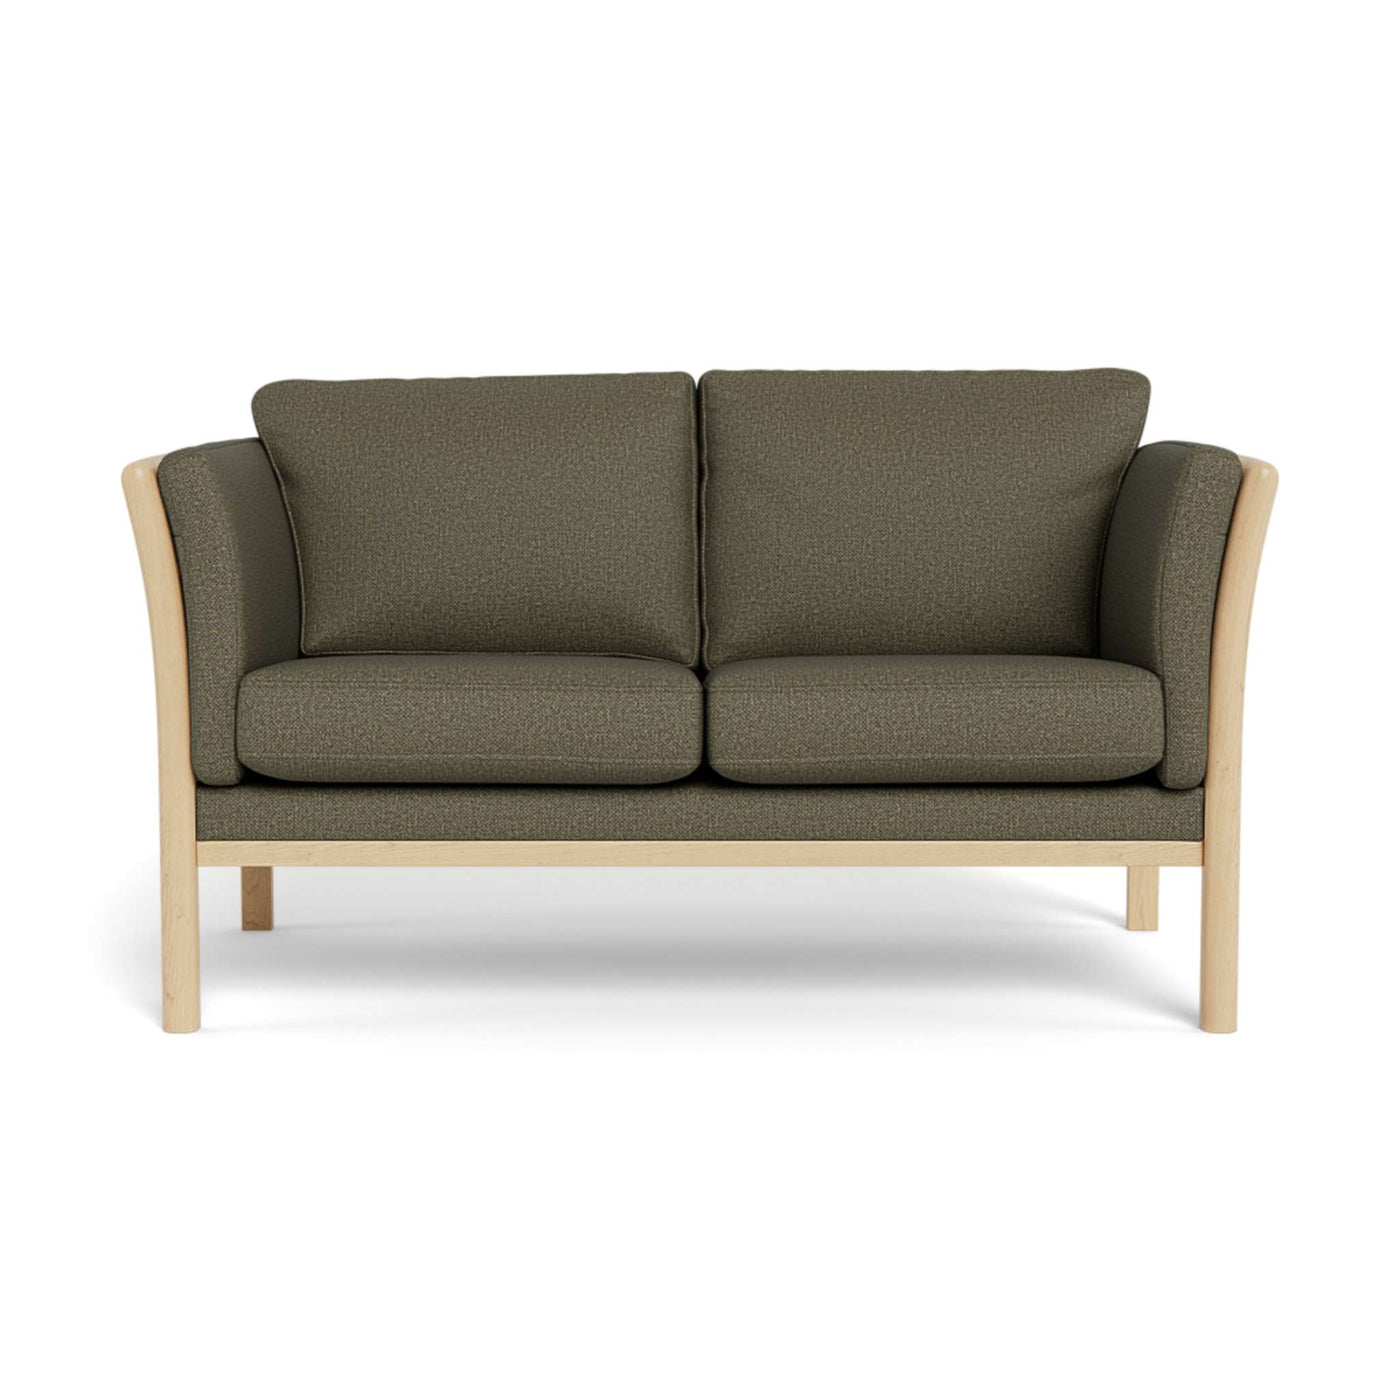 Rosenholm | 2-personers sofa